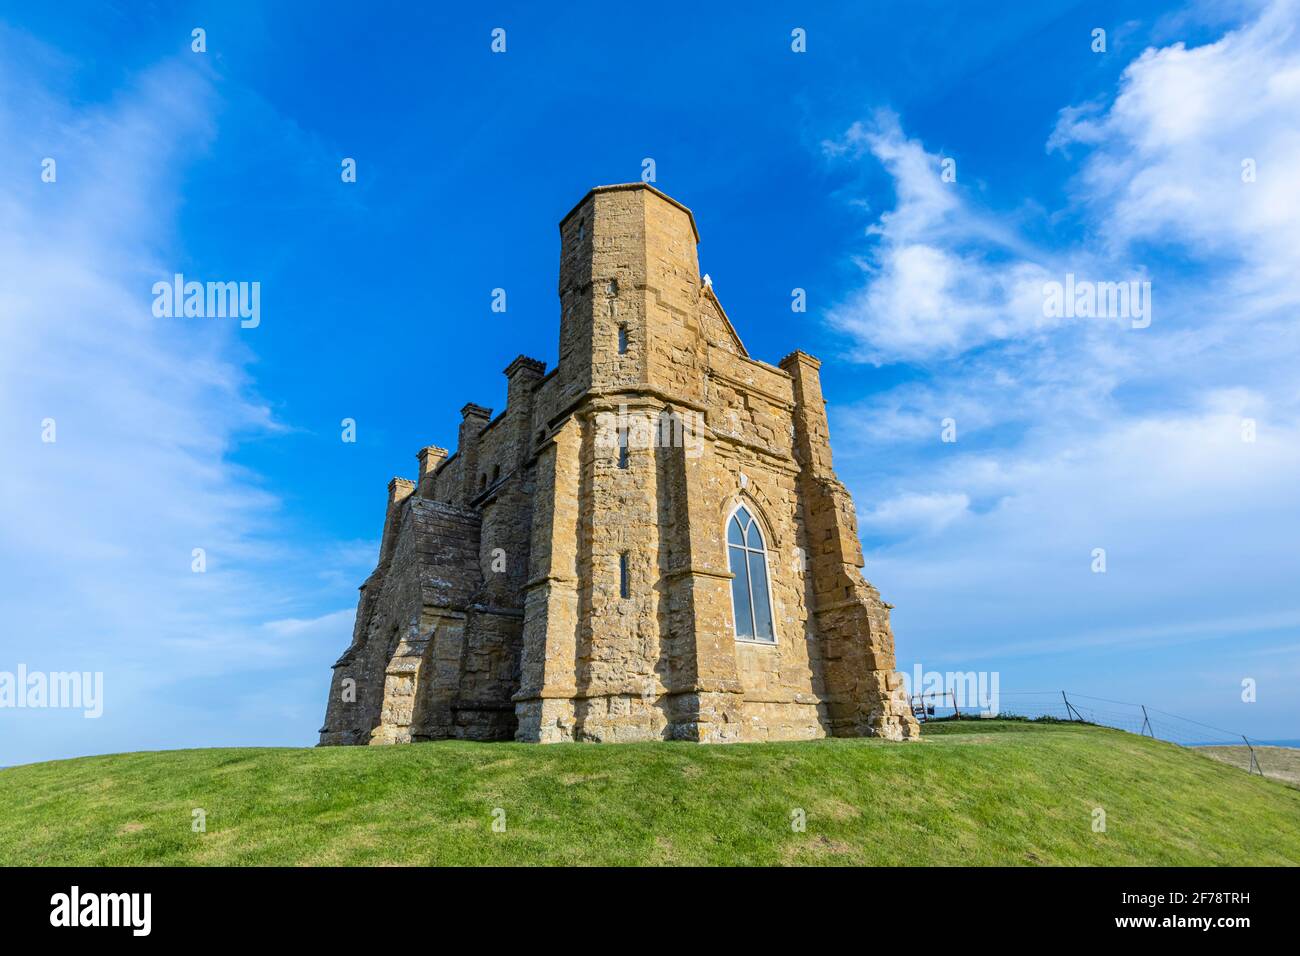 La chapelle Sainte-Catherine, petite chapelle située sur une colline au-dessus du village d'Abbotsbury, à Dorset, dans le sud-ouest de l'Angleterre, dédiée à Sainte-Catherine d'Alexandrie Banque D'Images